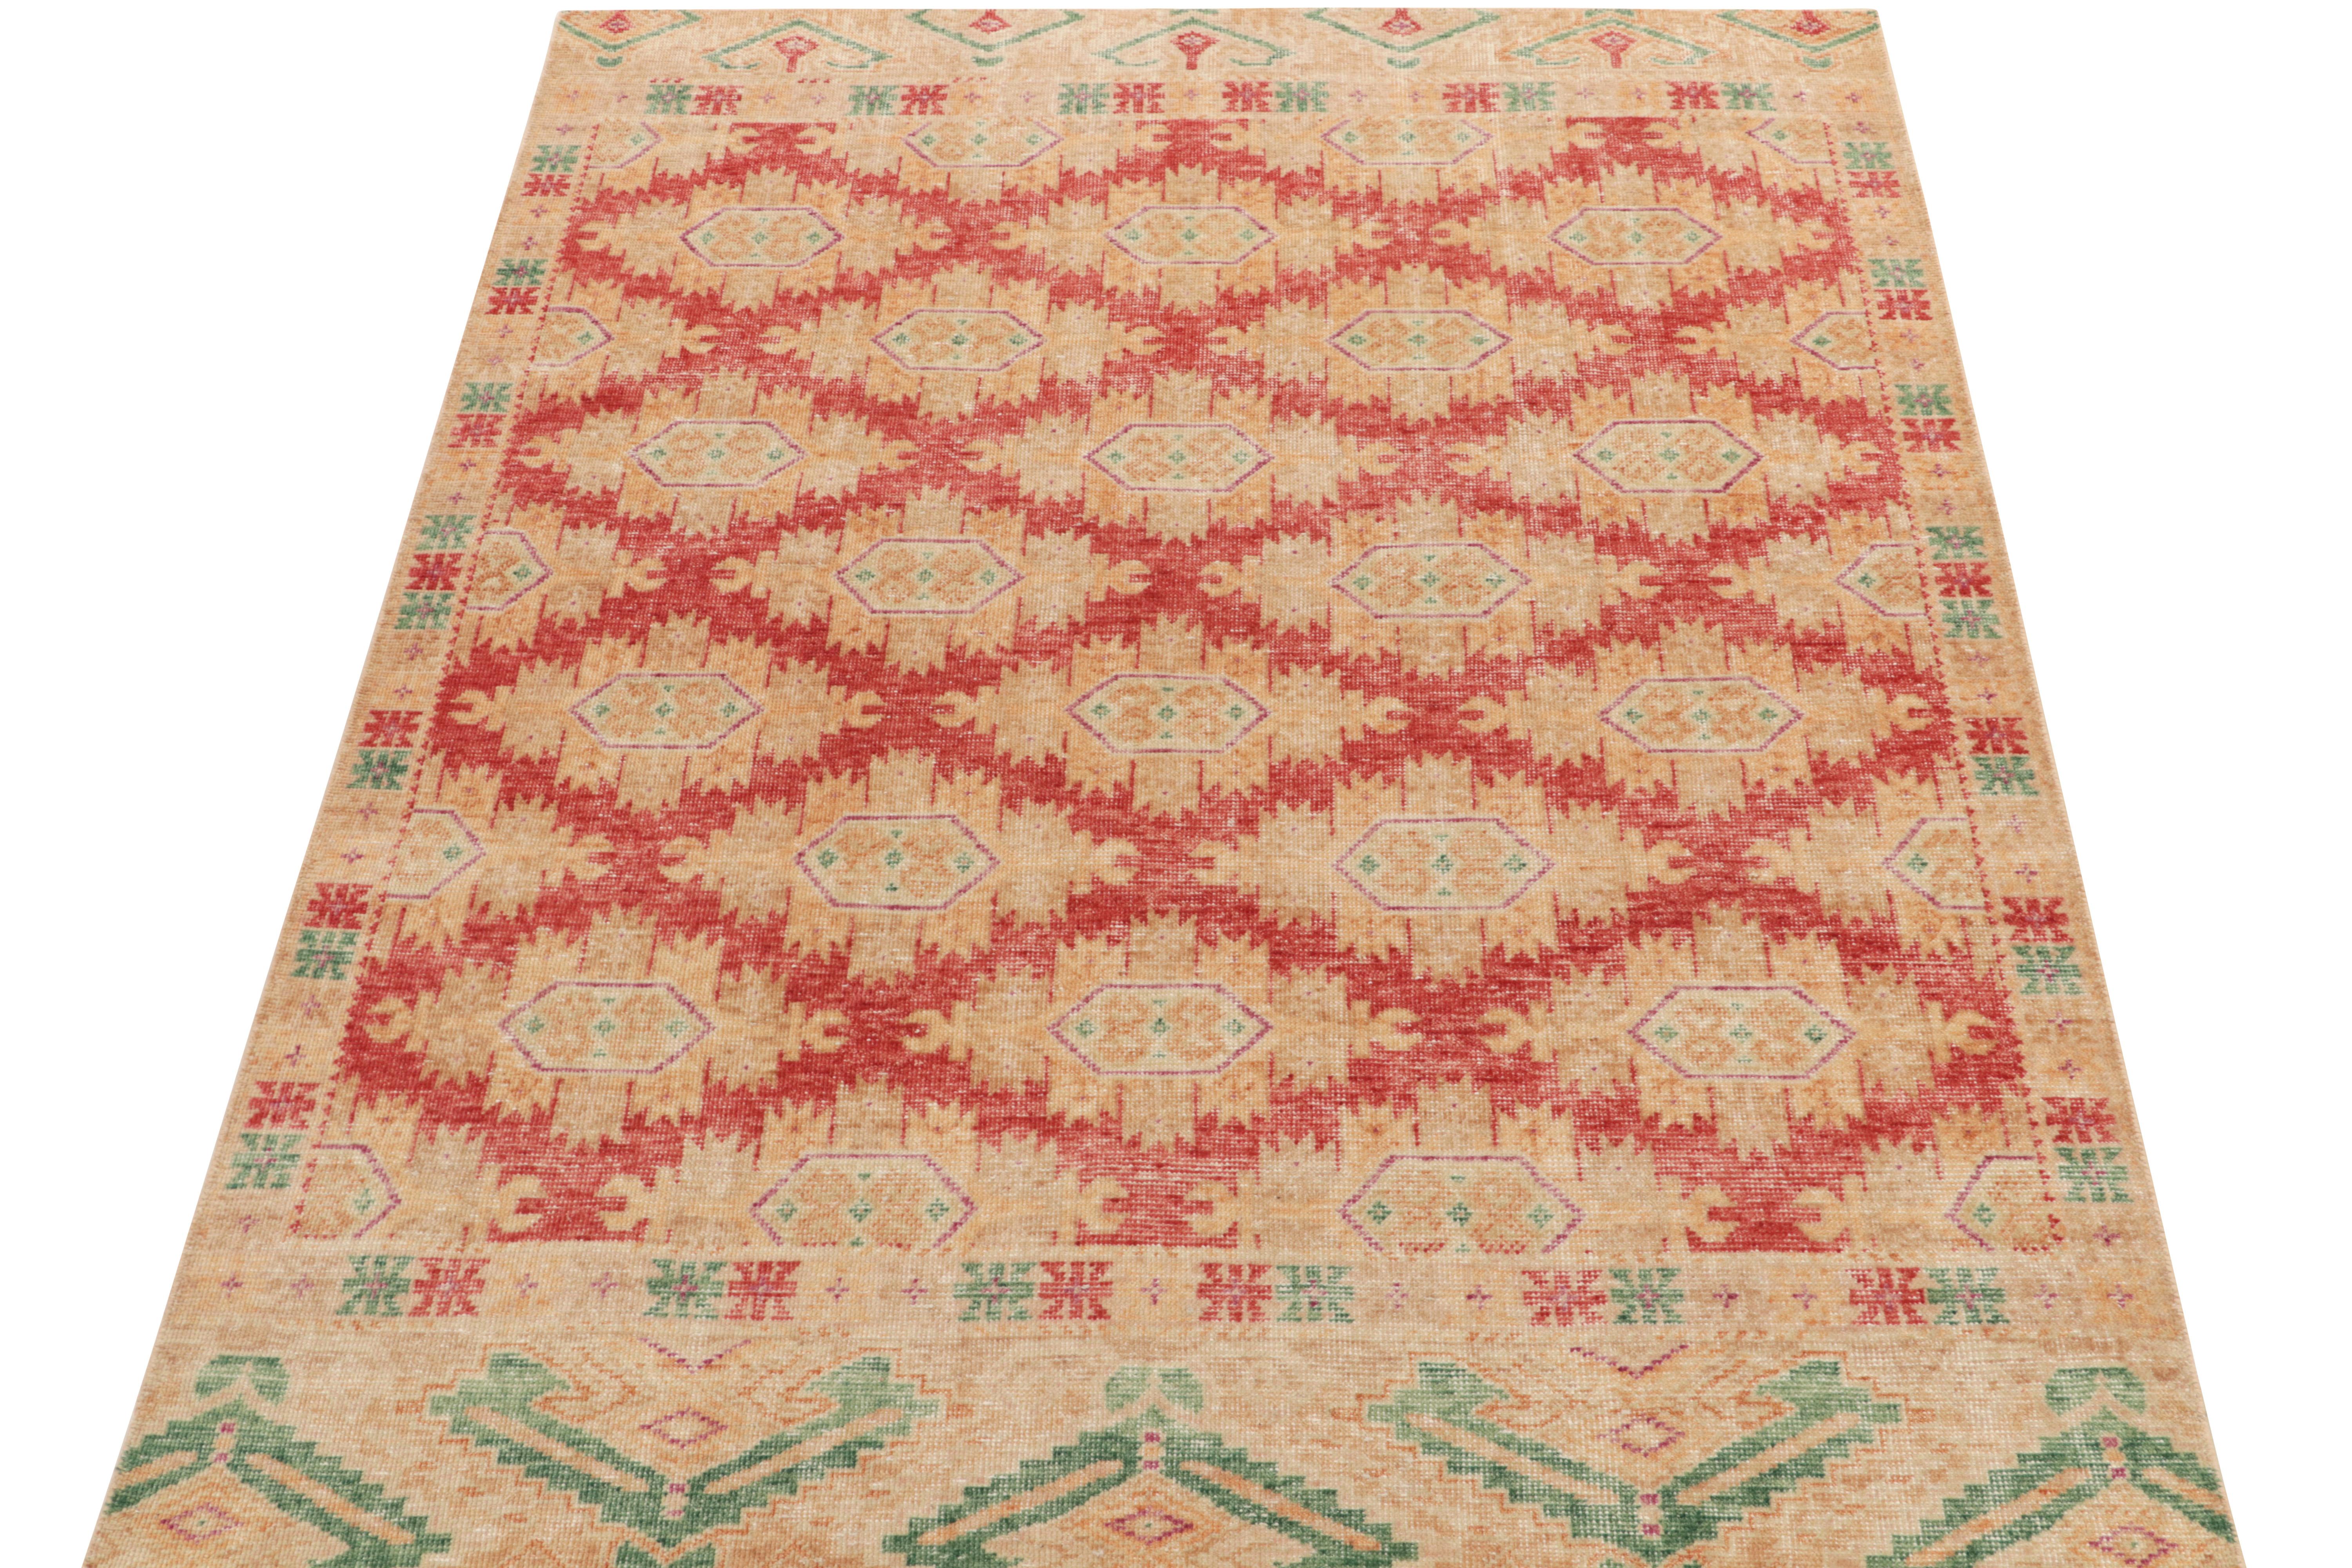 Un tapis 6x8 de style vieilli de la collection Homage de Rug & Kilim, présentant un montage de motifs géométriques et tribaux. Noué à la main dans un velours de laine fin et de faible épaisseur, ce projet est visuellement attrayant. Le design